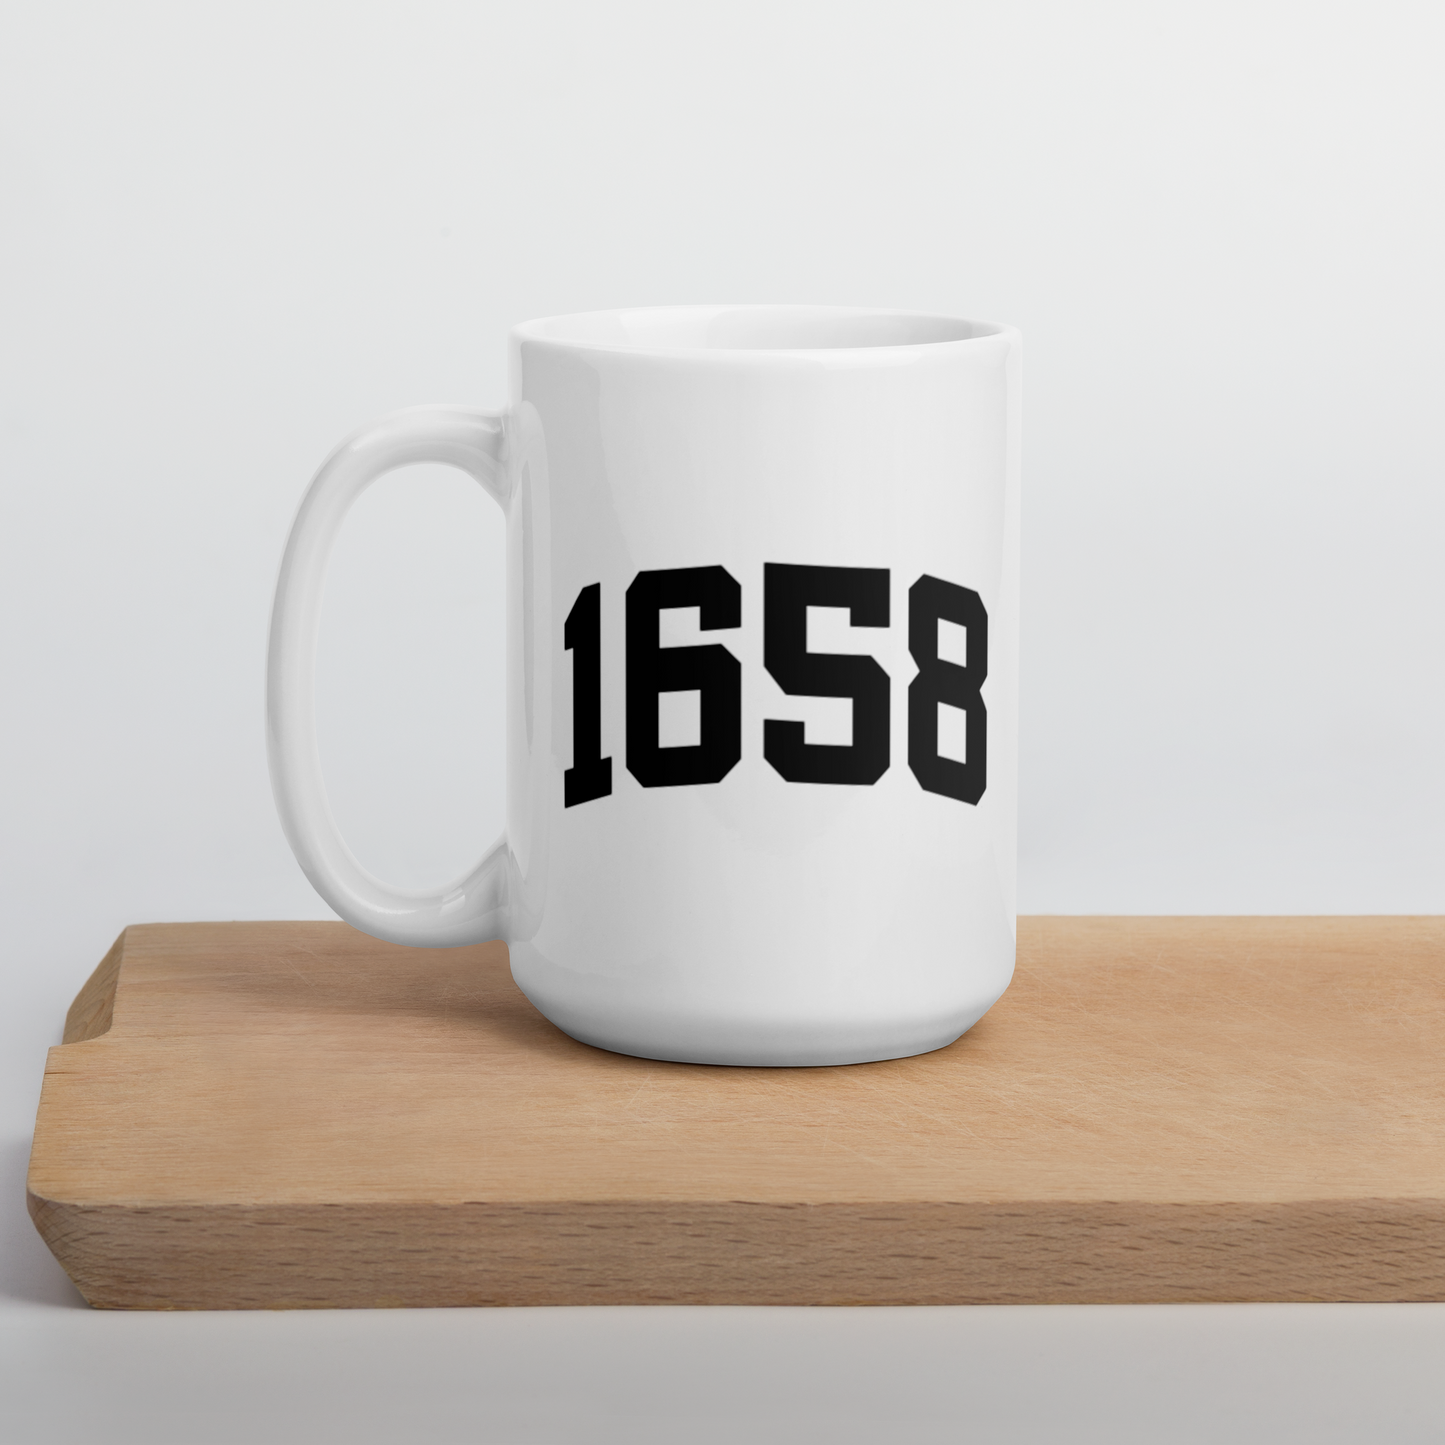 1658 Mug